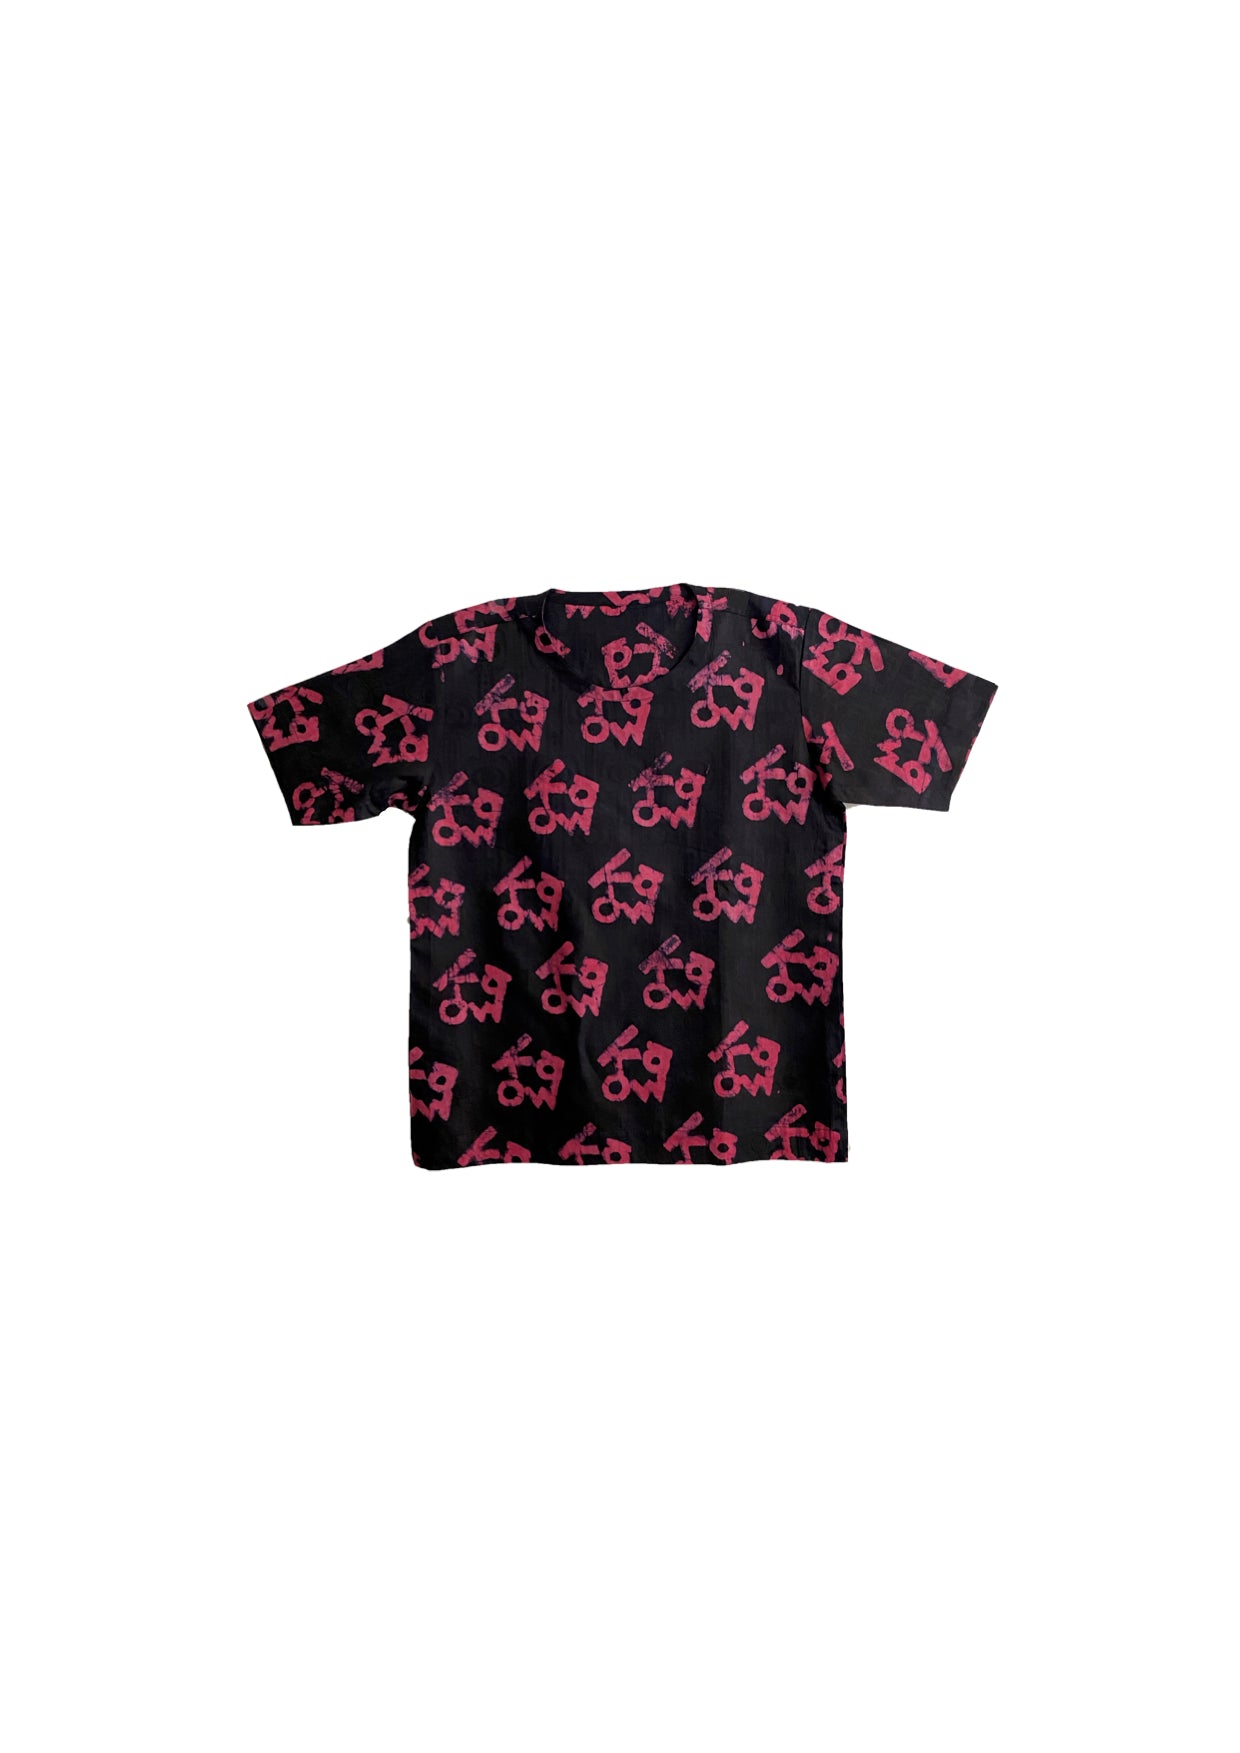 Structured Tshirt- Indigo and red kowa print